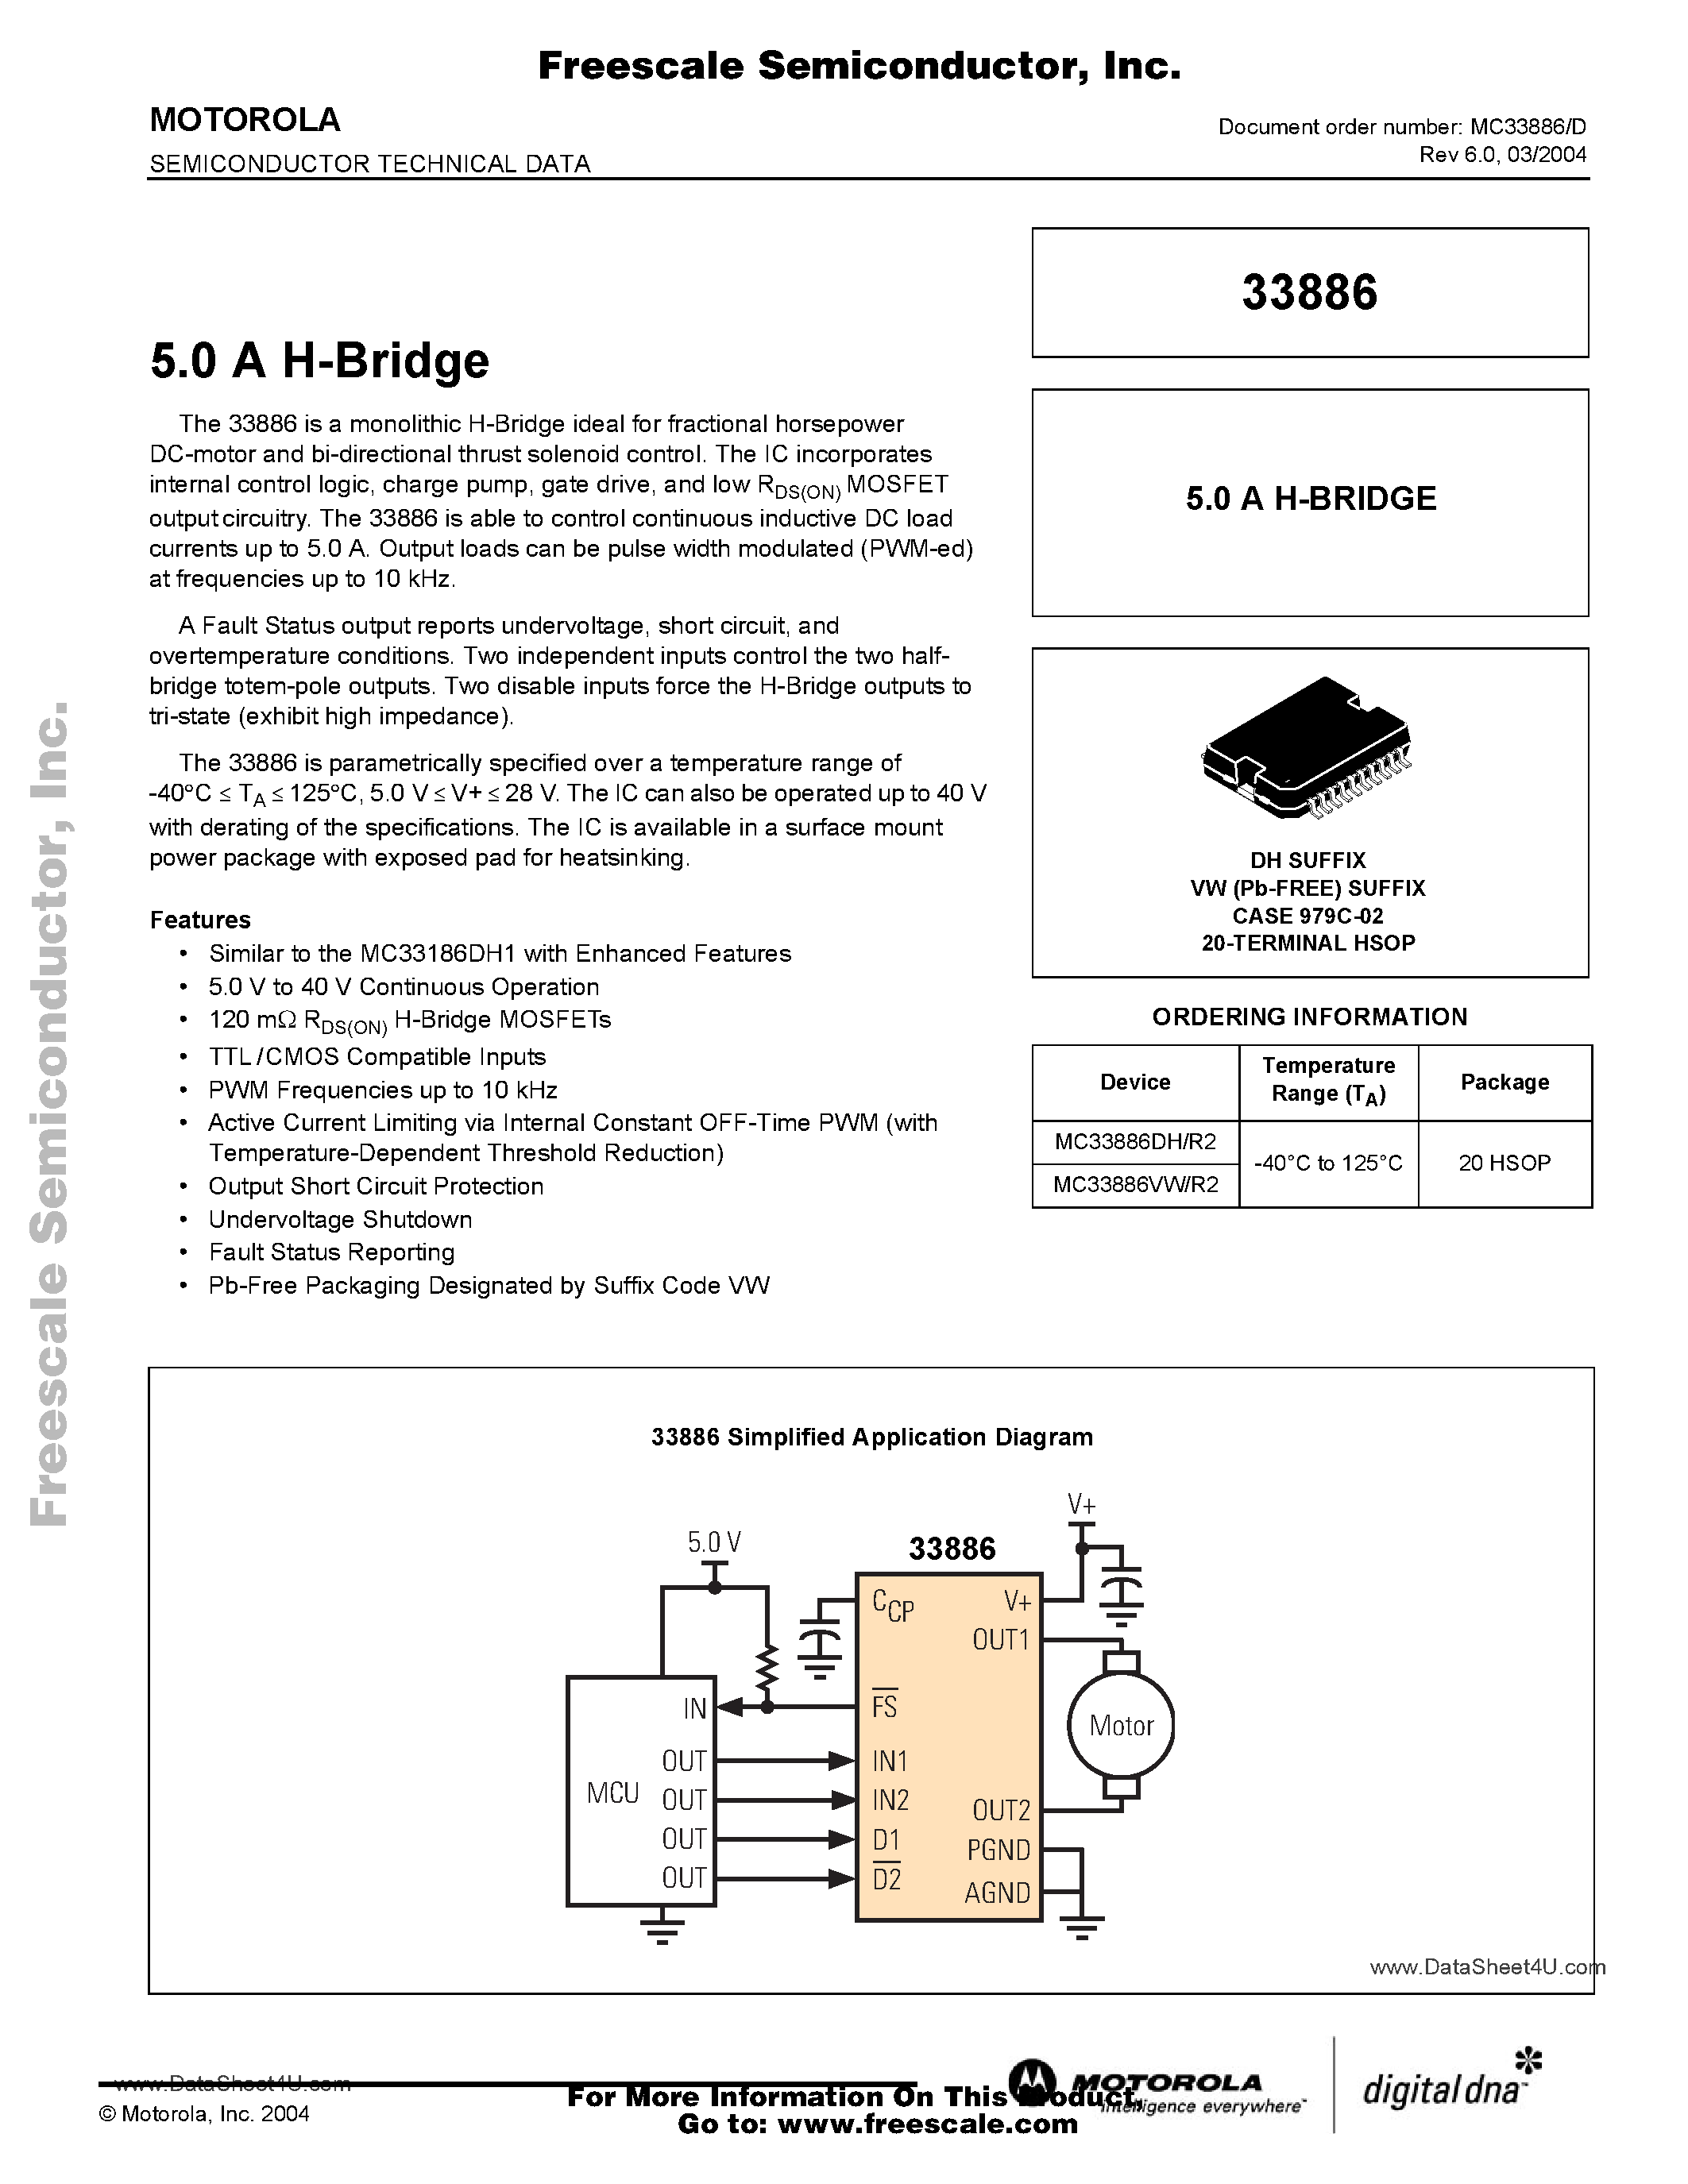 Даташит MC33886 - 5.0 A H BRIDGE страница 1